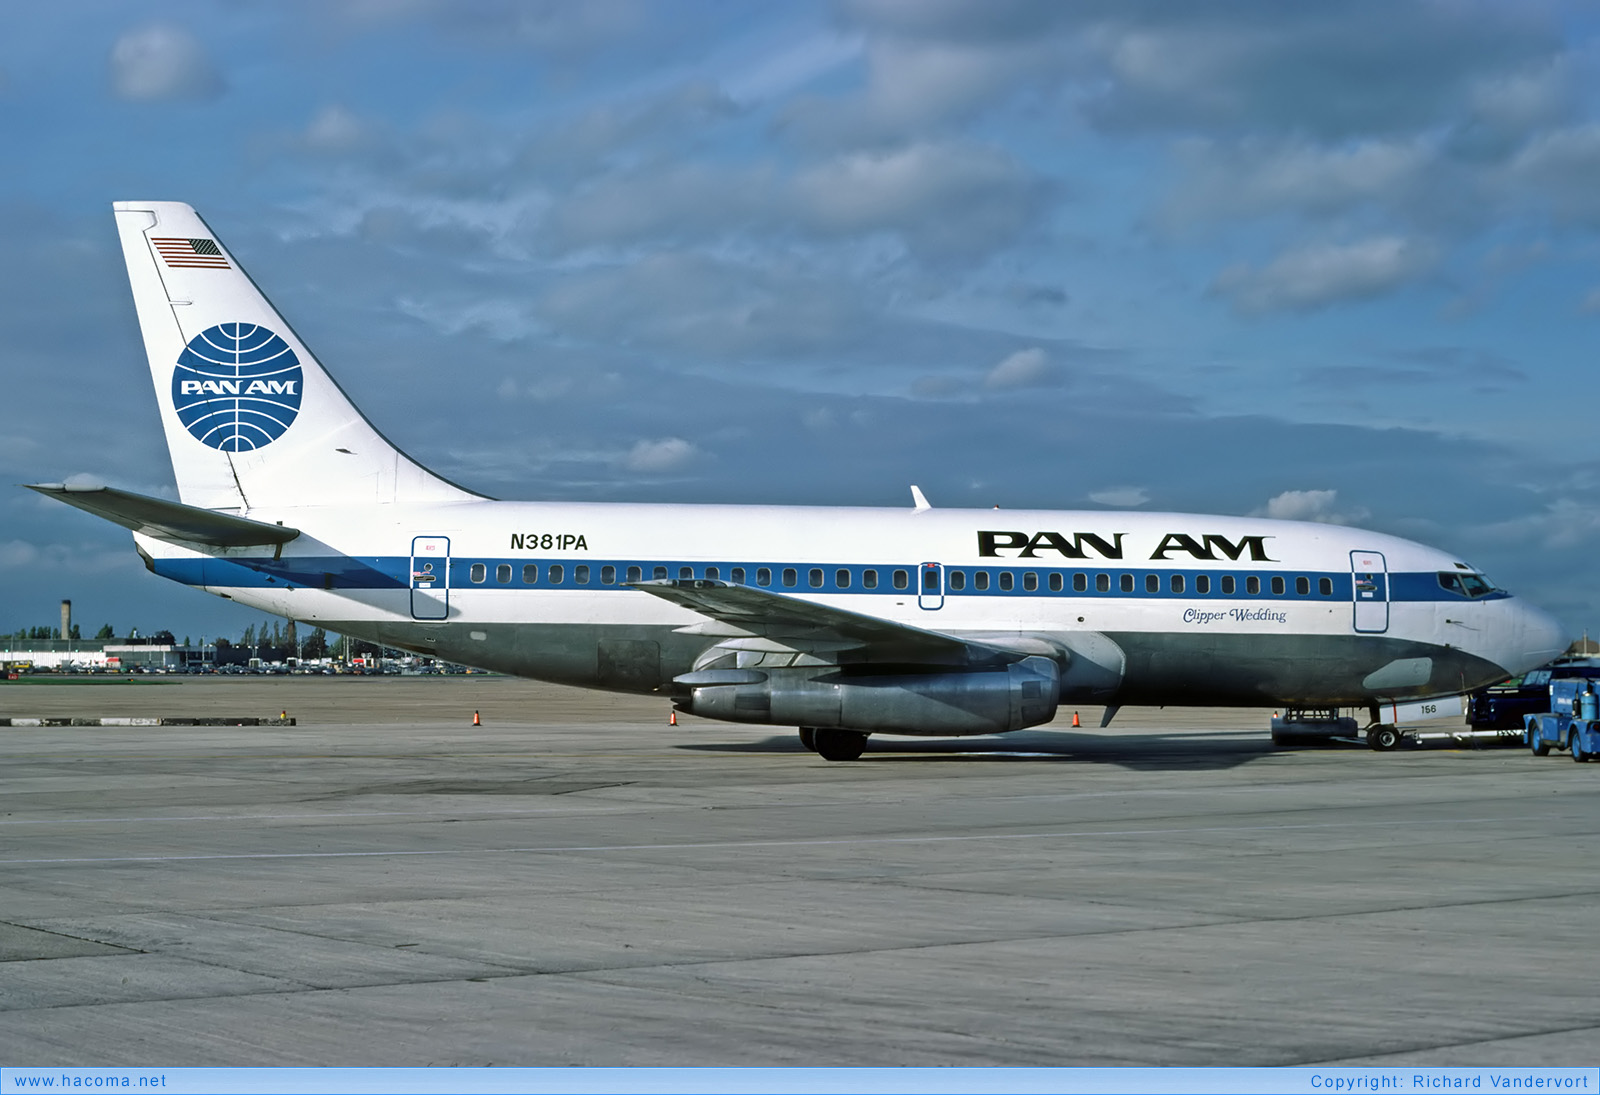 Foto von N381PA - Pan Am Clipper Wedding - London Heathrow Airport - 11.1982